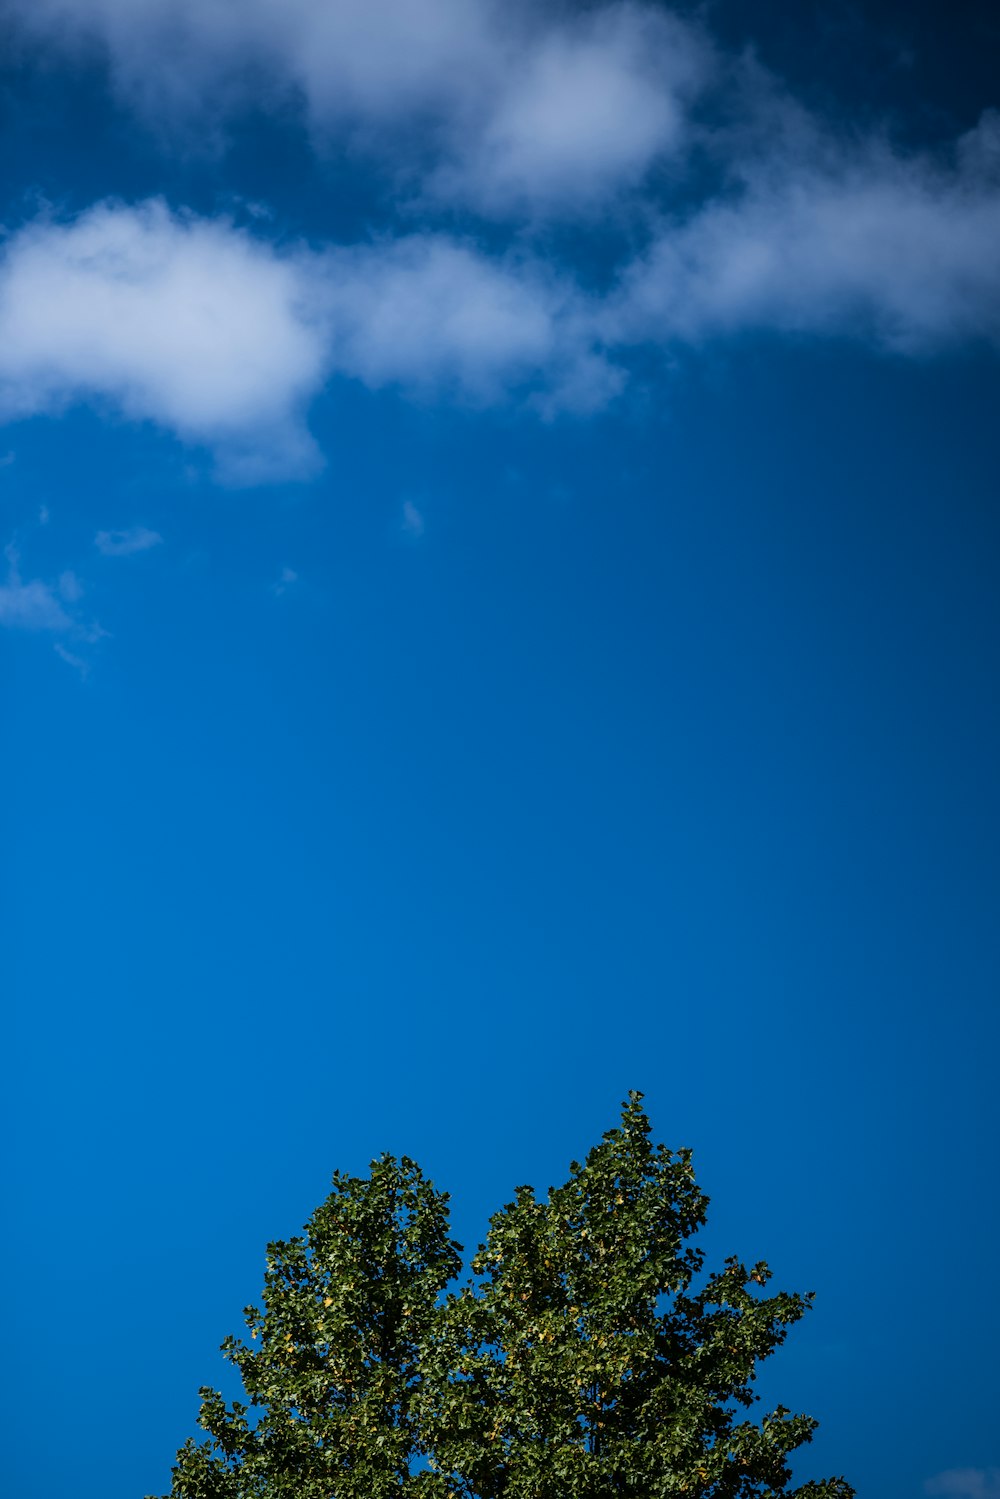 alberi verdi sotto il cielo blu durante il giorno